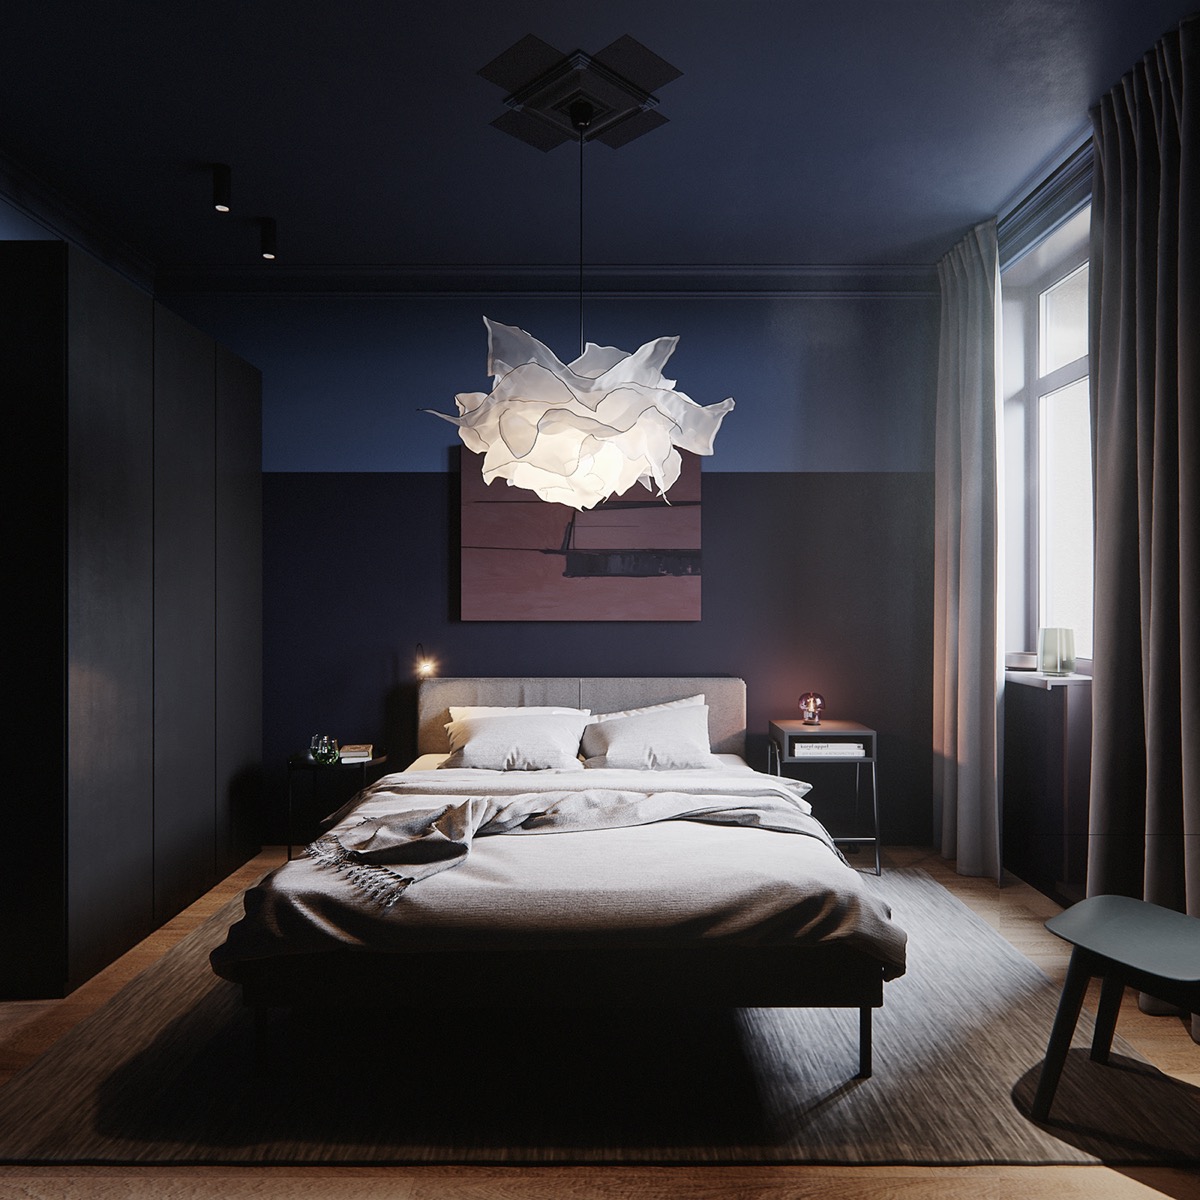 Thiết kế phòng ngủ dark bedroom decor Điểm nhấn decor tối trong ...